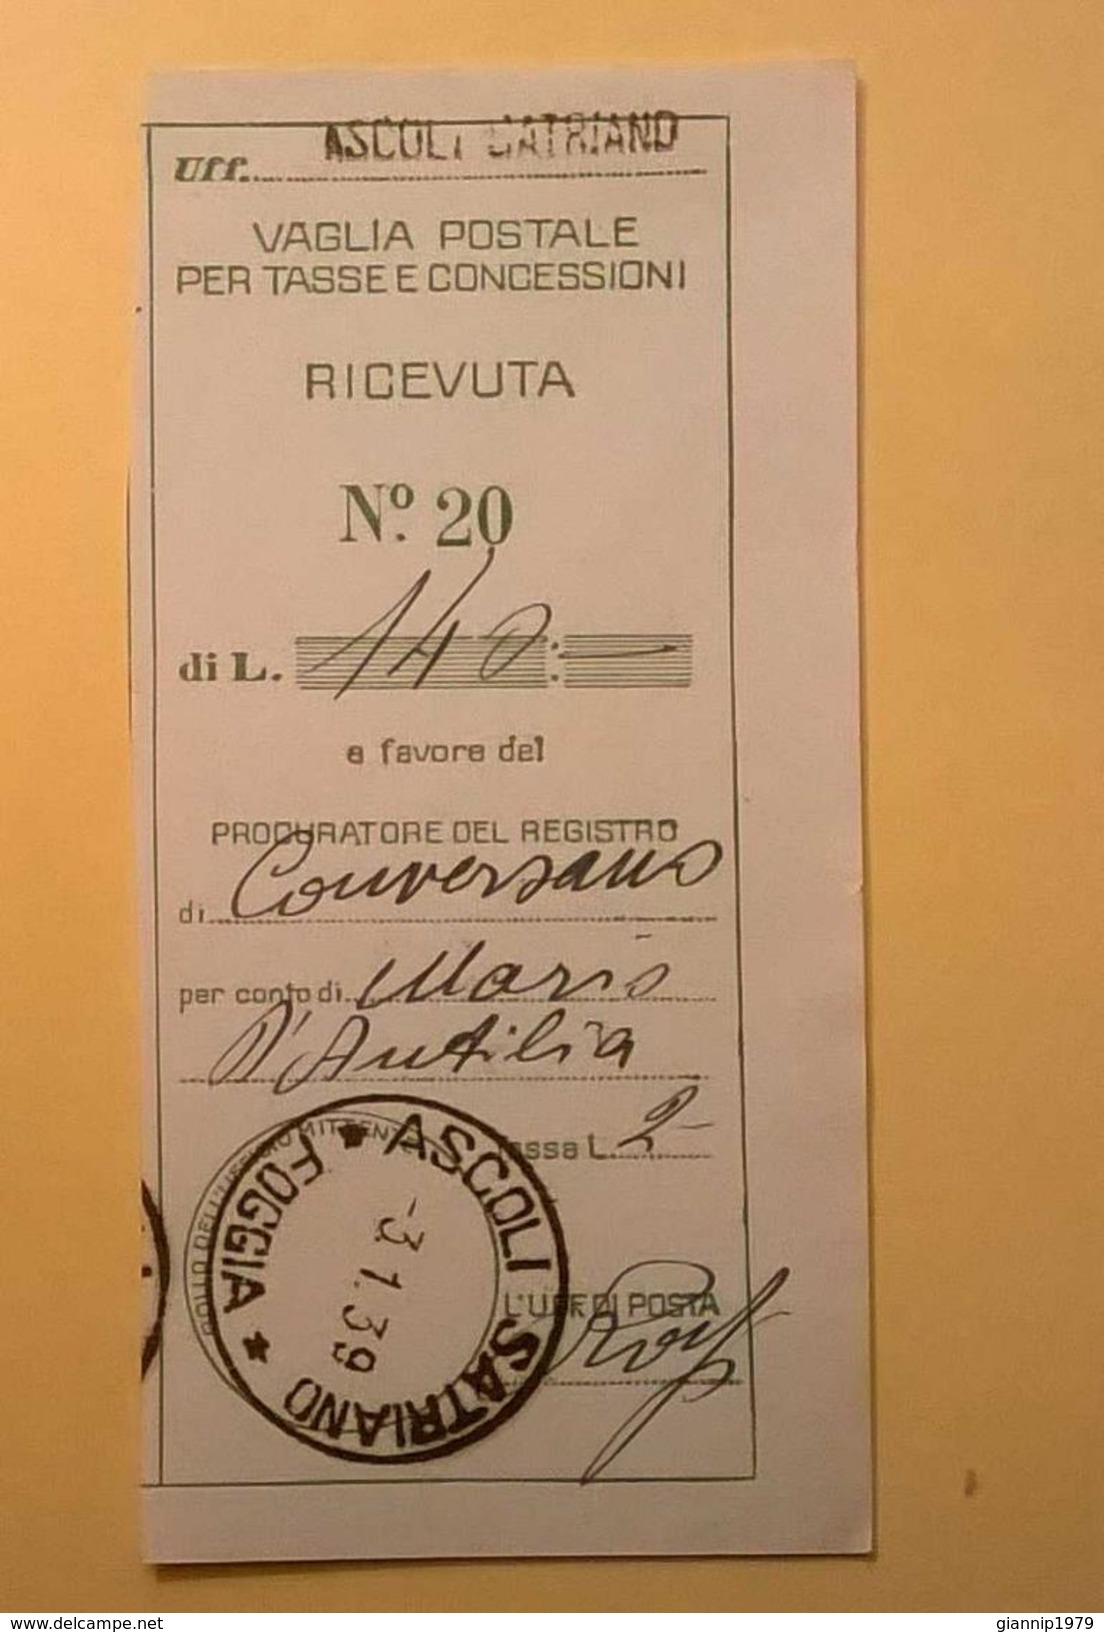 VAGLIA POSTALE RICEVUTA ASCOLI SATRIANO FOGGIA 1939 - Mandatsgebühr